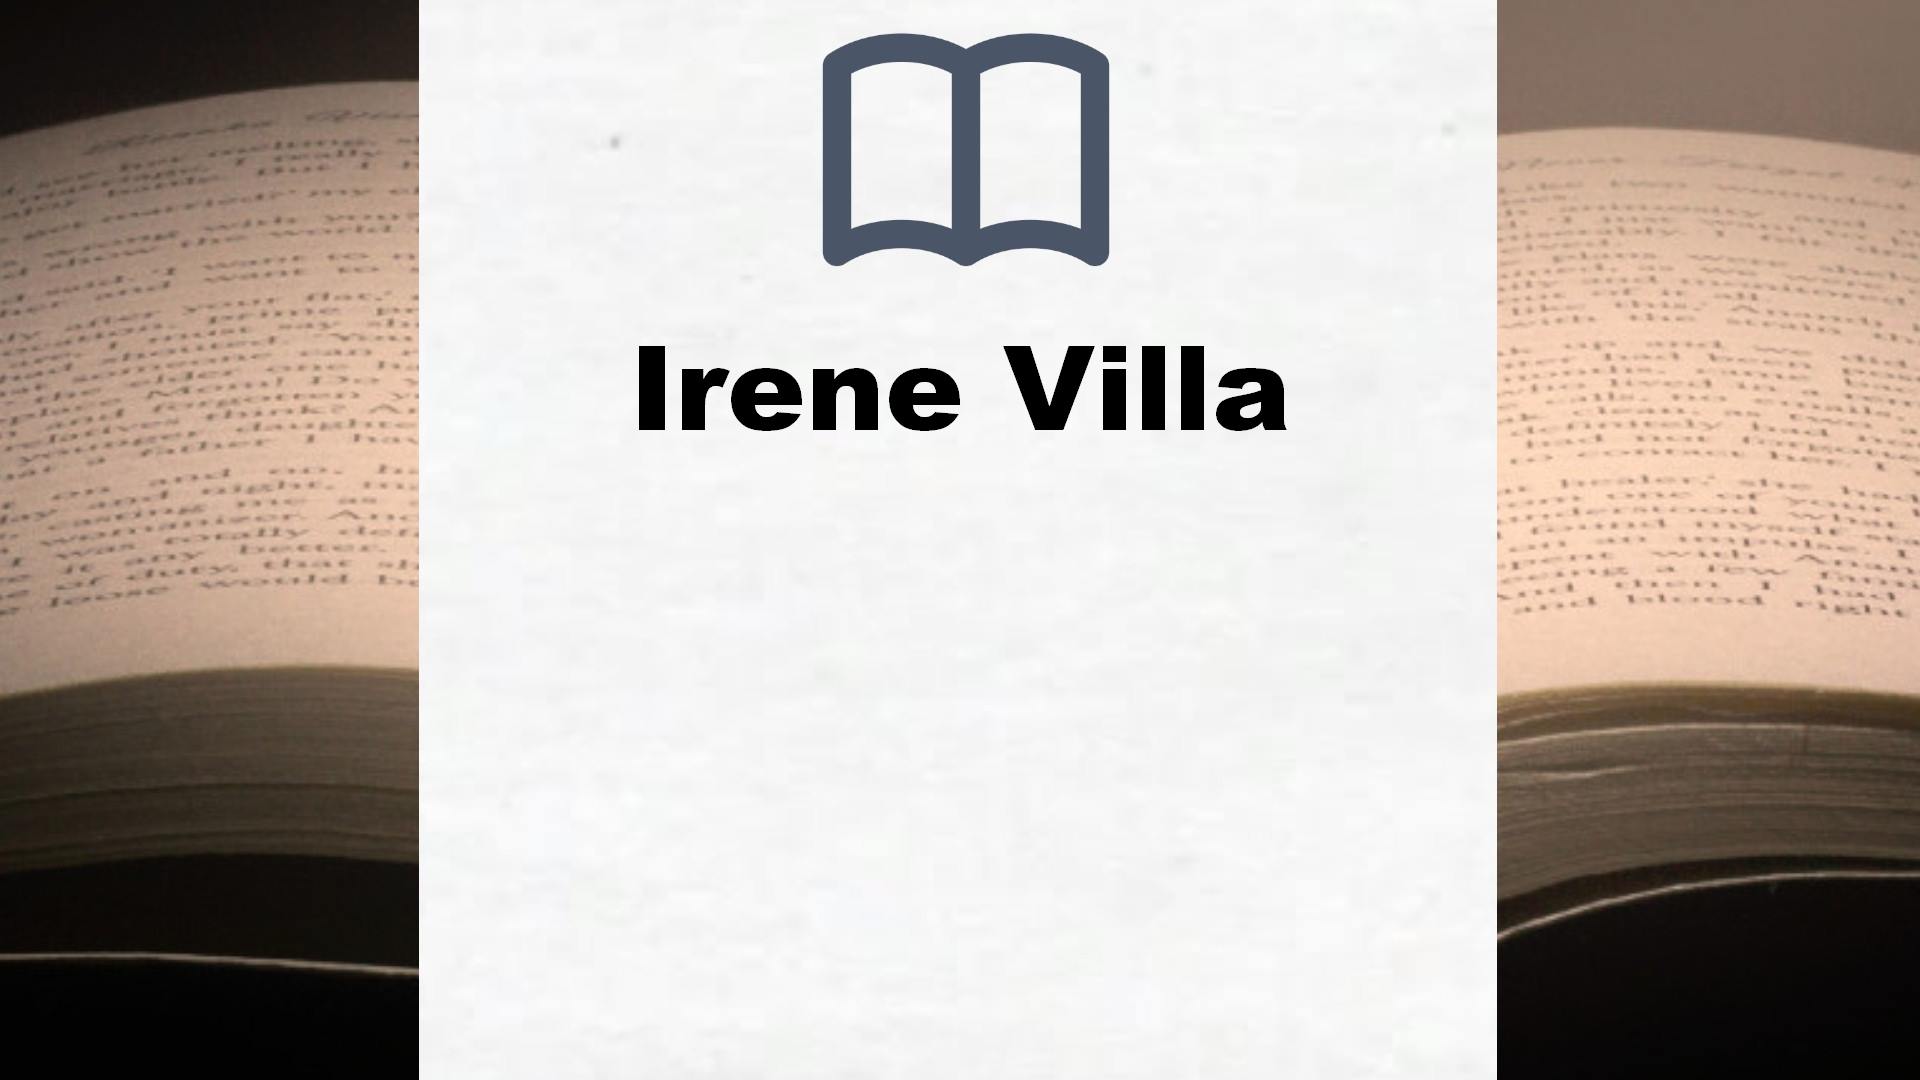 Libros Irene Villa